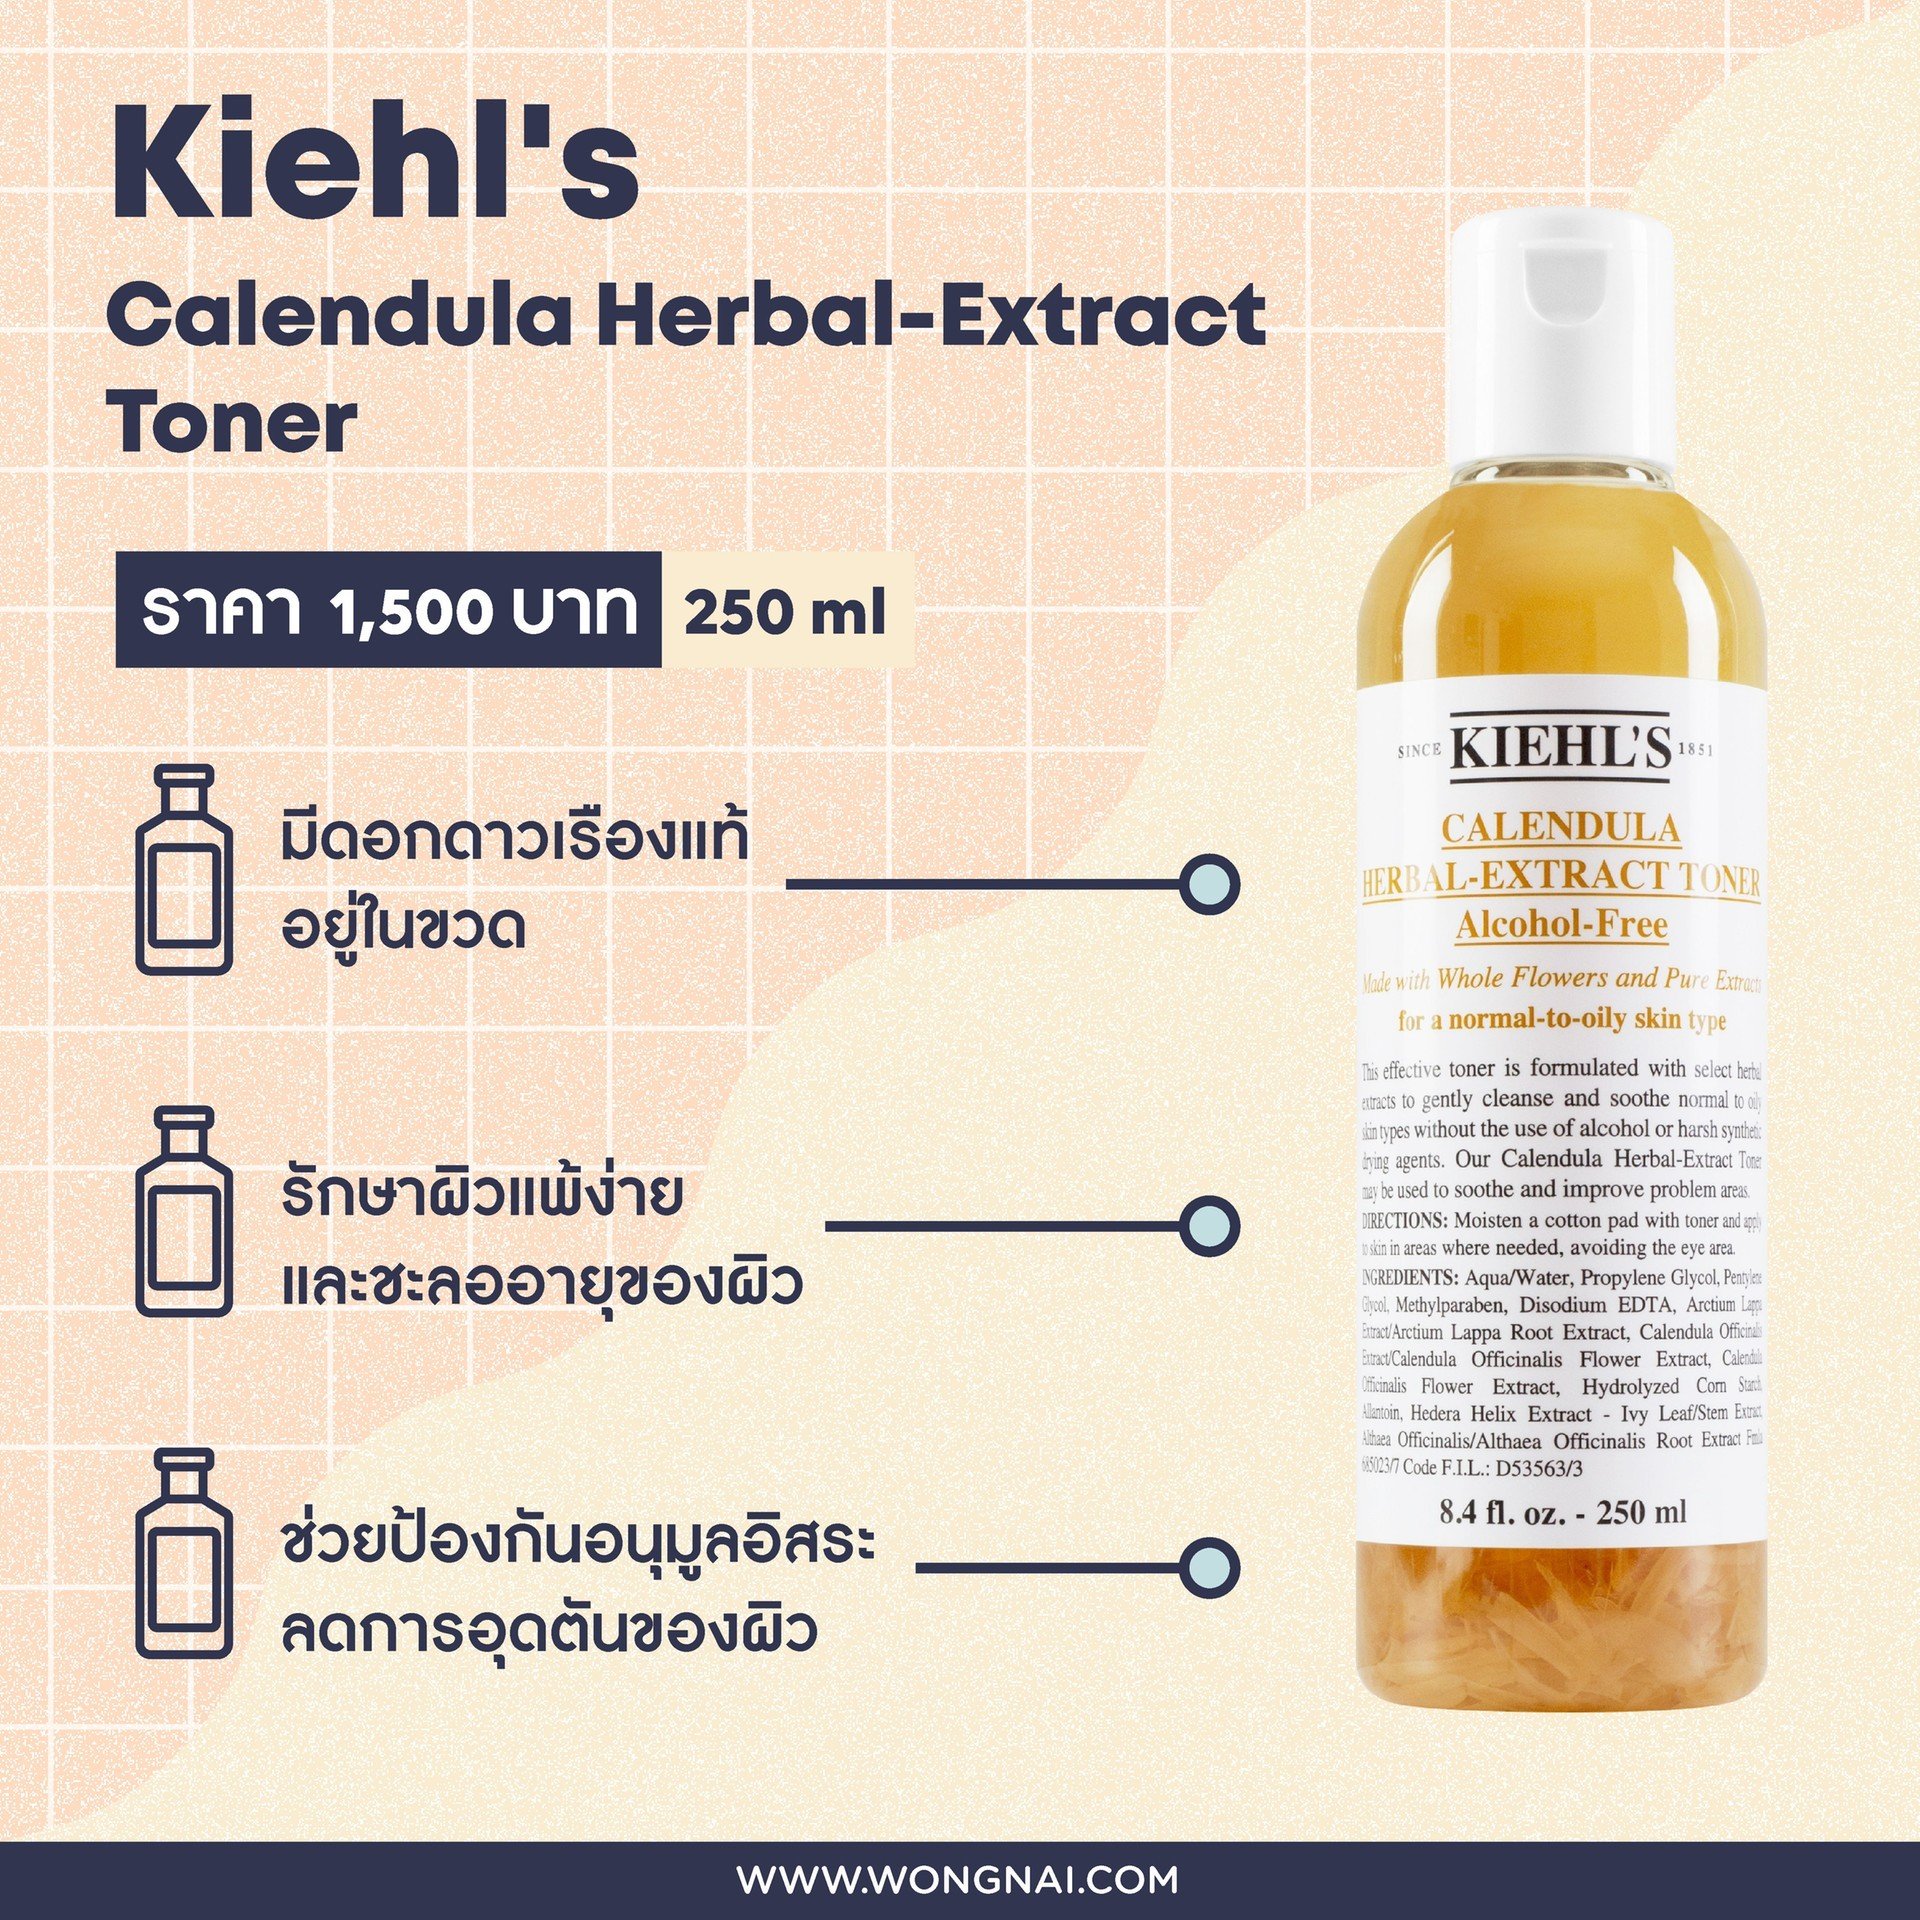 โทนเนอร์ Kiehl's Calendula Herbal-Extract Toner